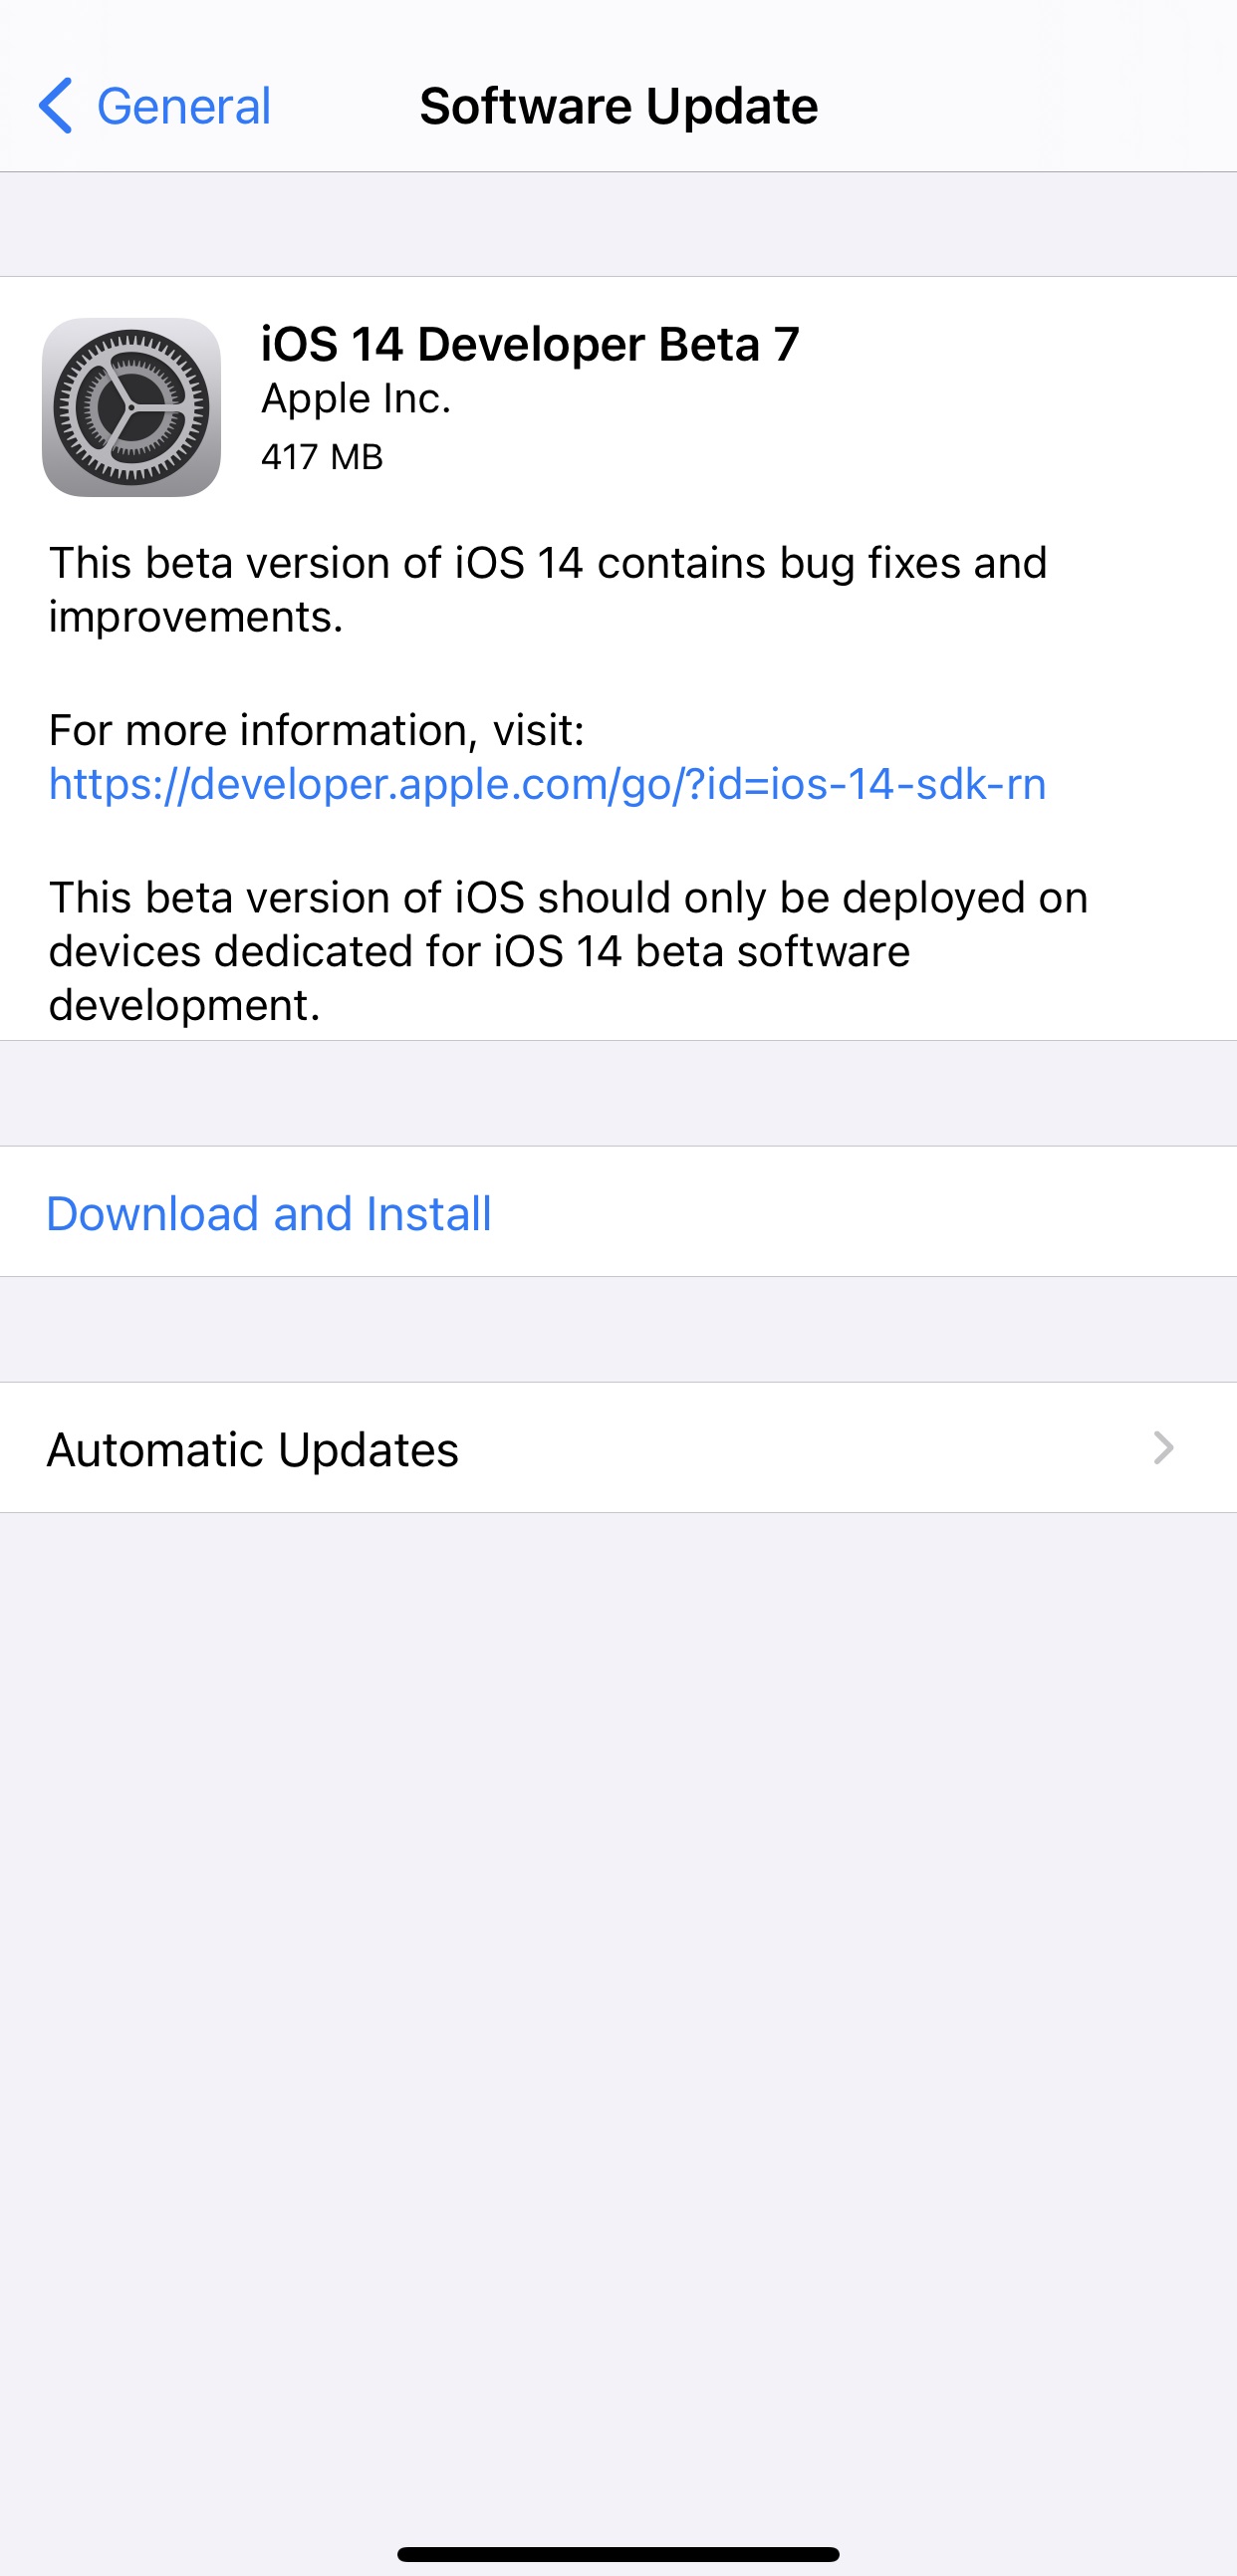 Apple 发布 iOS 14 开发者预览版 beta 7，修复 AirPods 弹窗显示错误